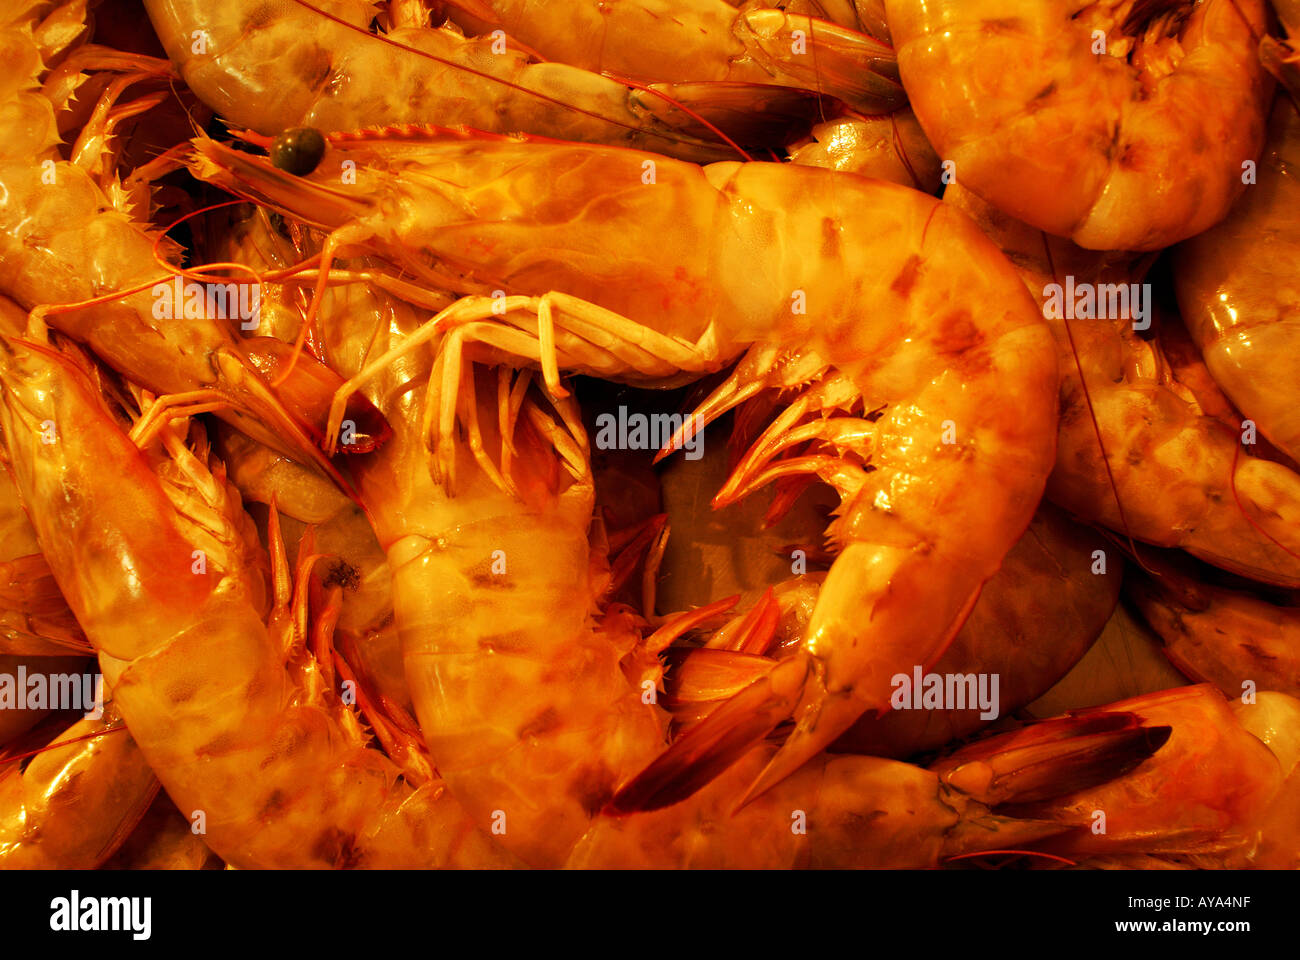 Shrimps (Camarao) Stock Photo